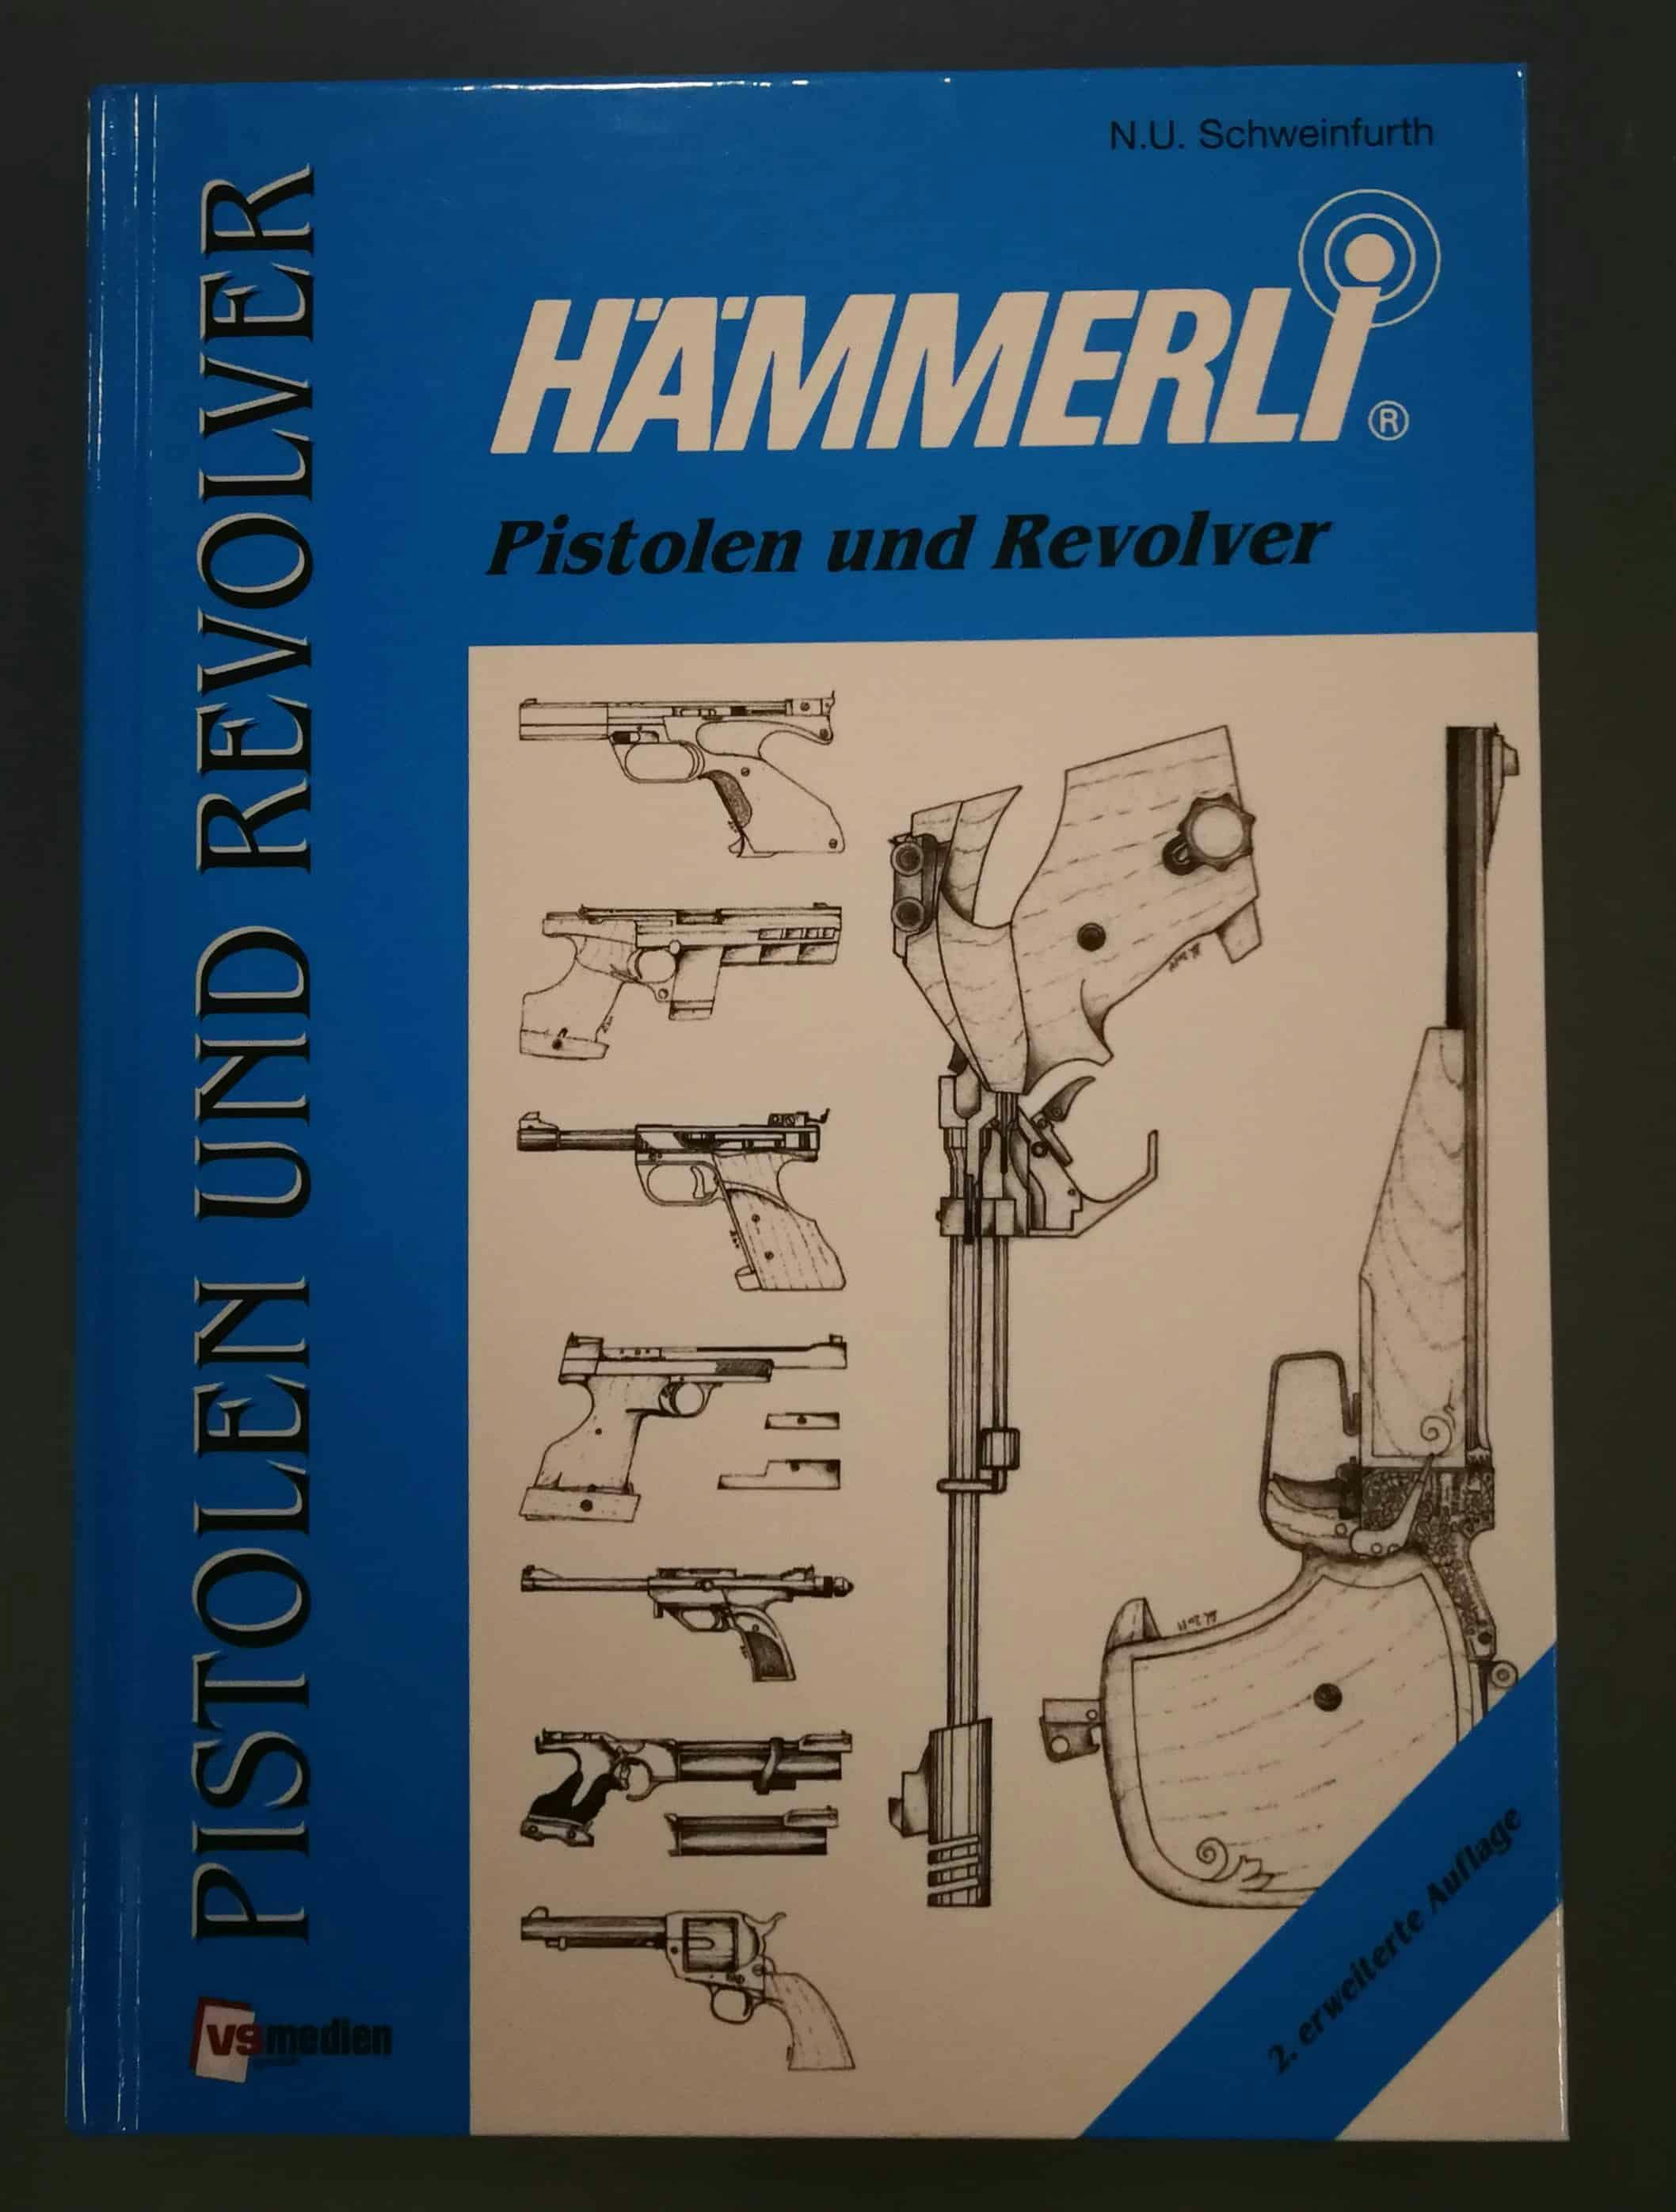 Das Titelbild zeigt eine Auswahl an Zeichnungen verschiedener Hämmerli-Modelle.
